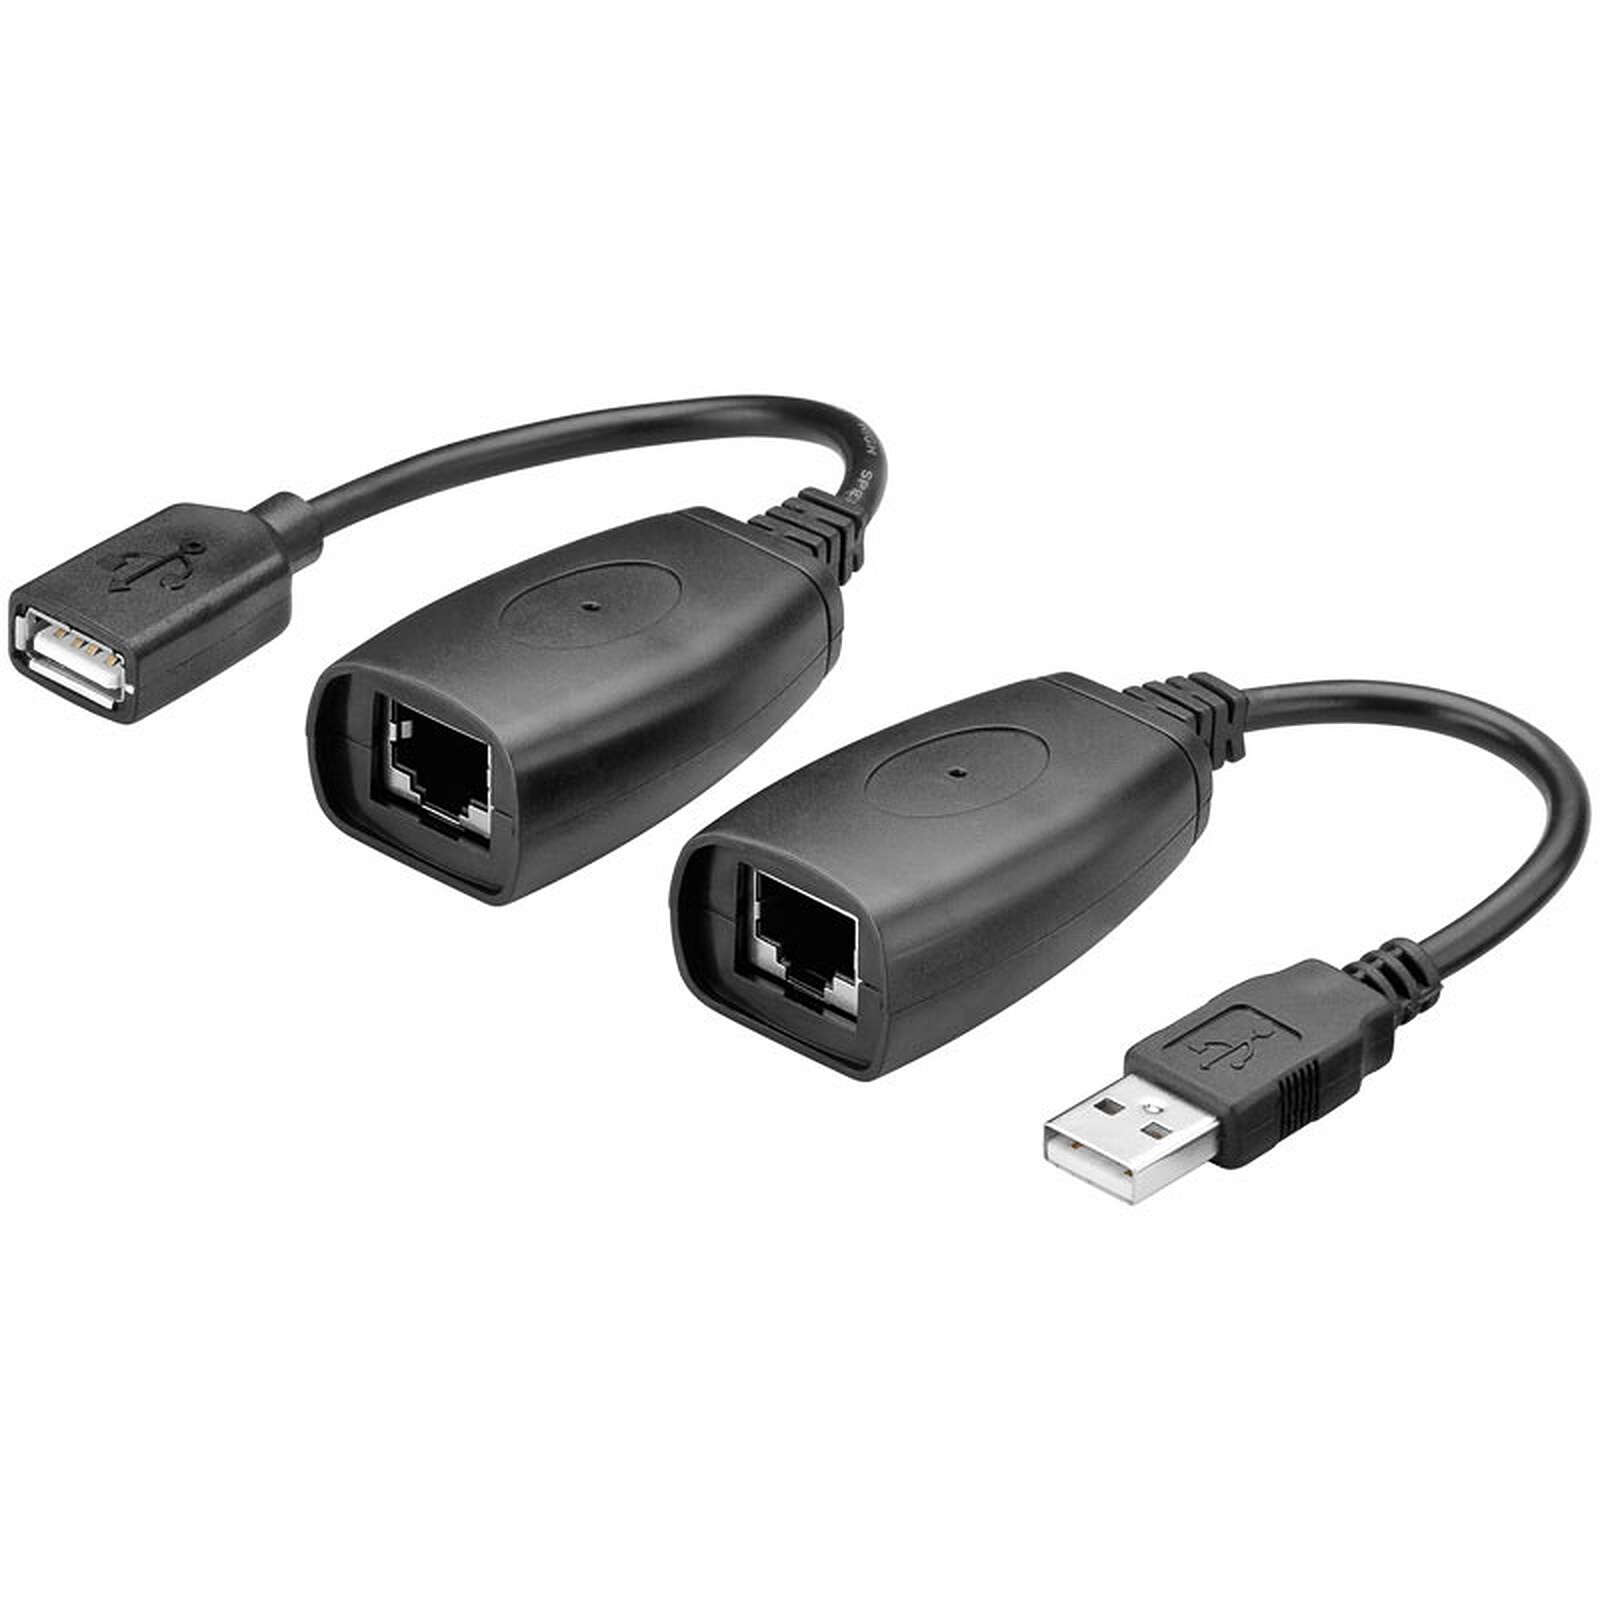 Adaptateur de convertisseur USB2.0 vers RJ45 Extender CAT5E / CAT6 100-240V claviers pour caméras USB EU Plug webcams Câble d'extension réseau imprimantes 